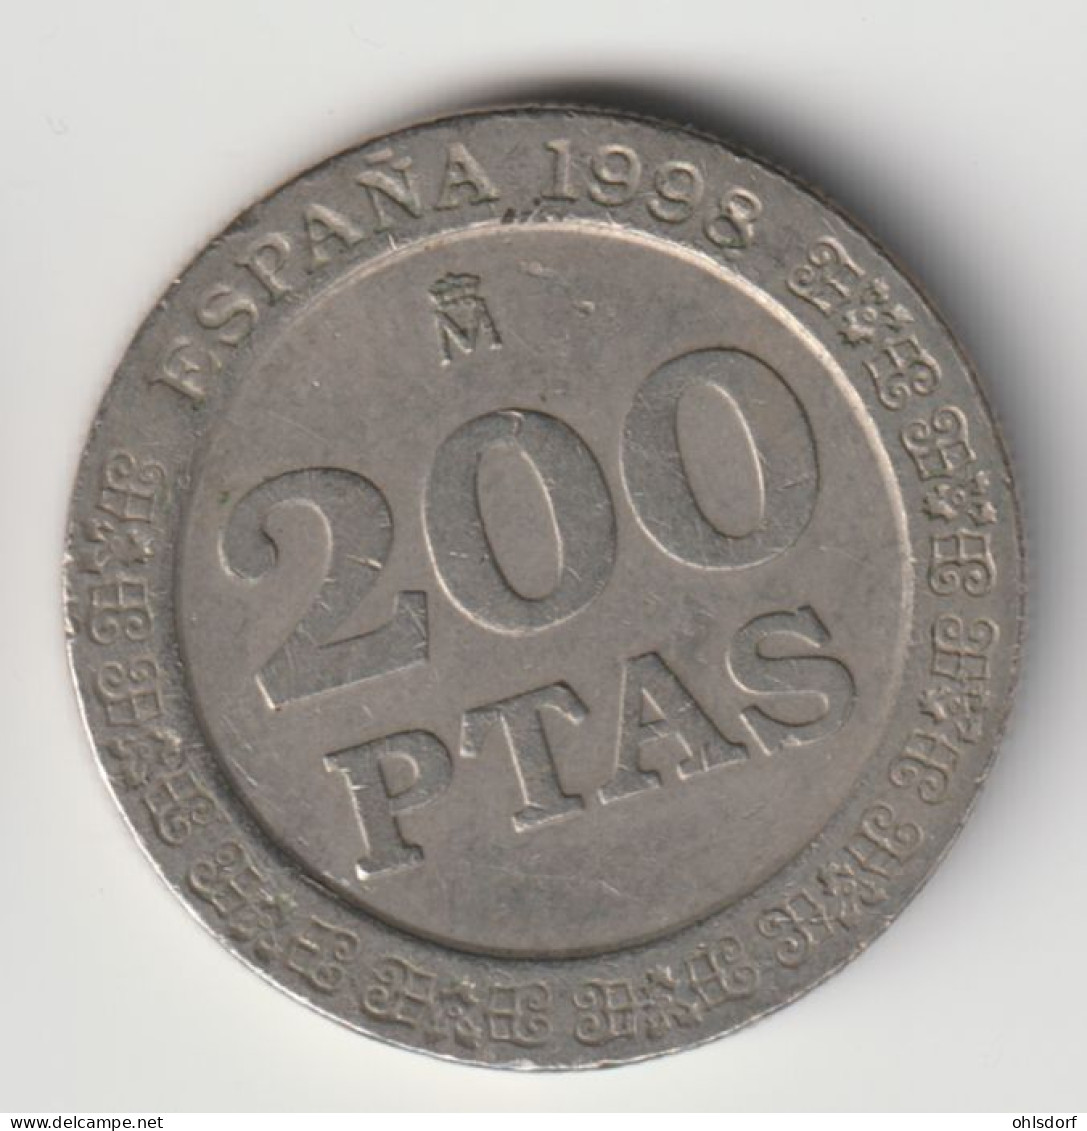 ESPANA 1998: 200 Pesetas, KM 992 - 200 Pesetas